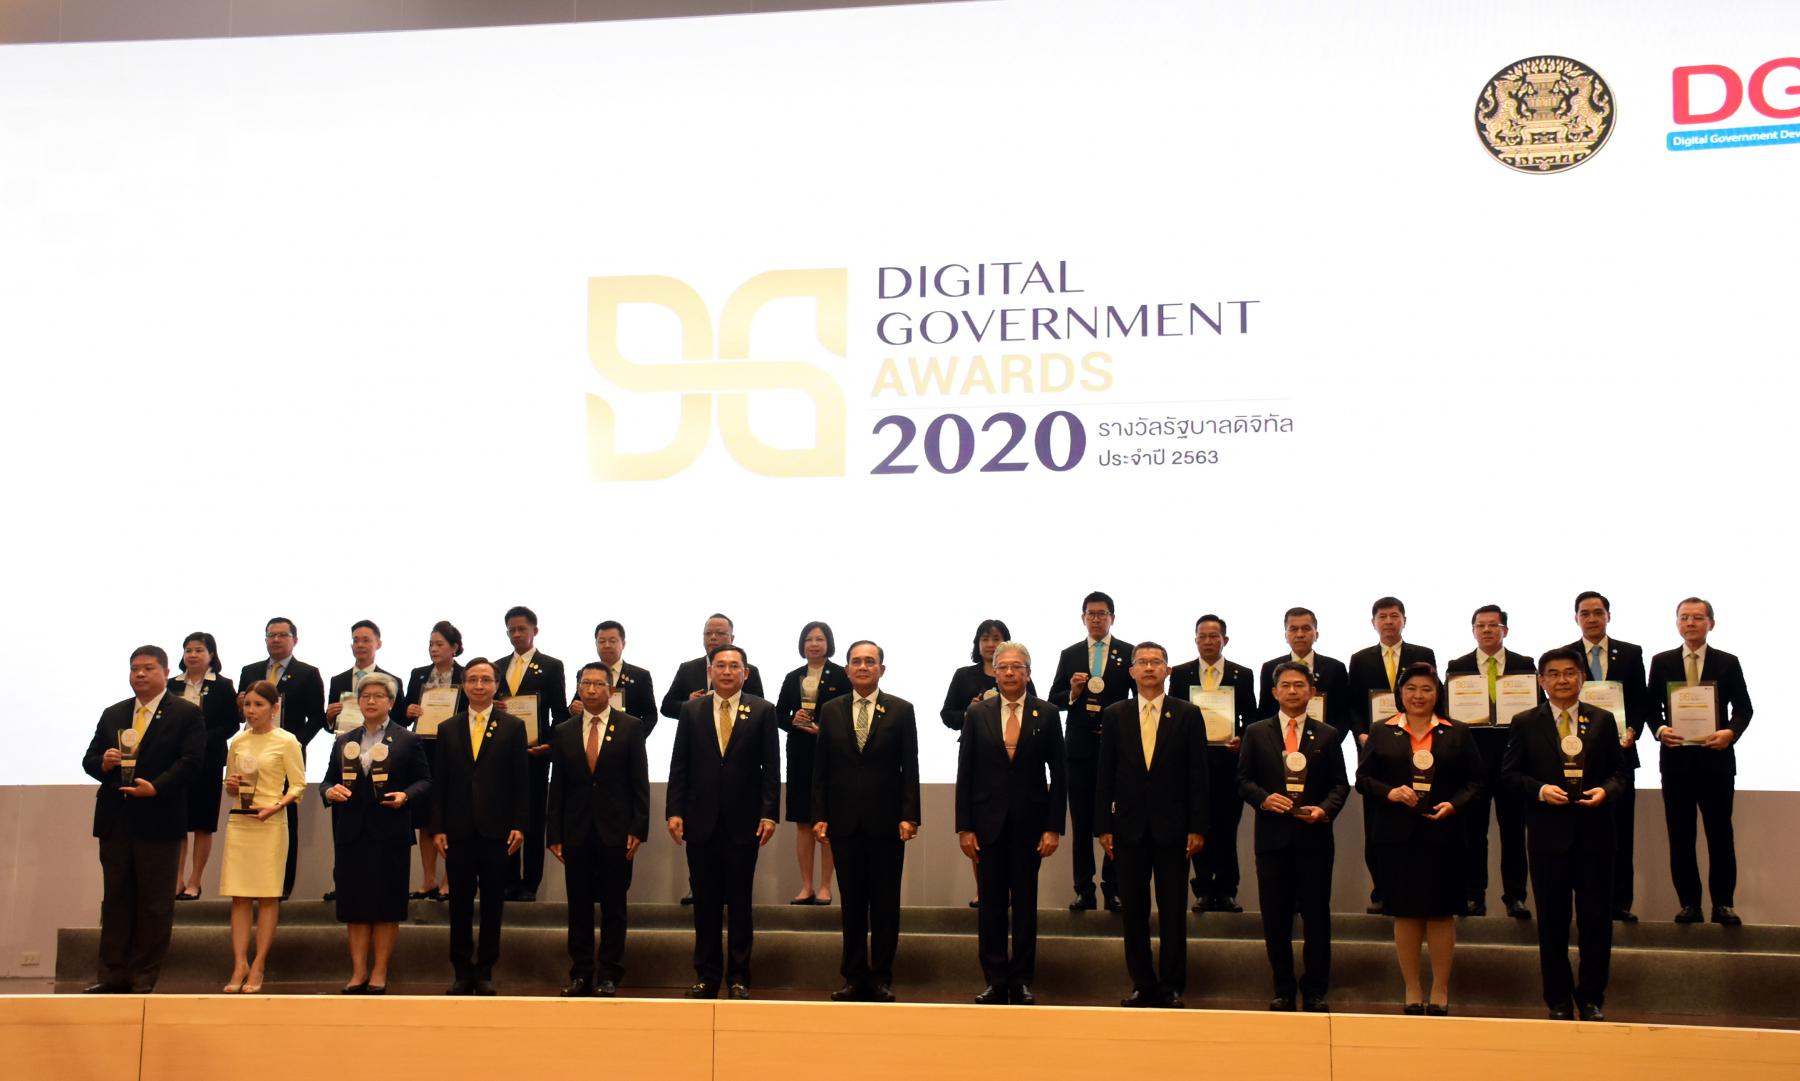 งานมอบรางวัล Digital Government Award 2020 (รางวัลรัฐบาลดิจิทัลประจำปี 2563) 